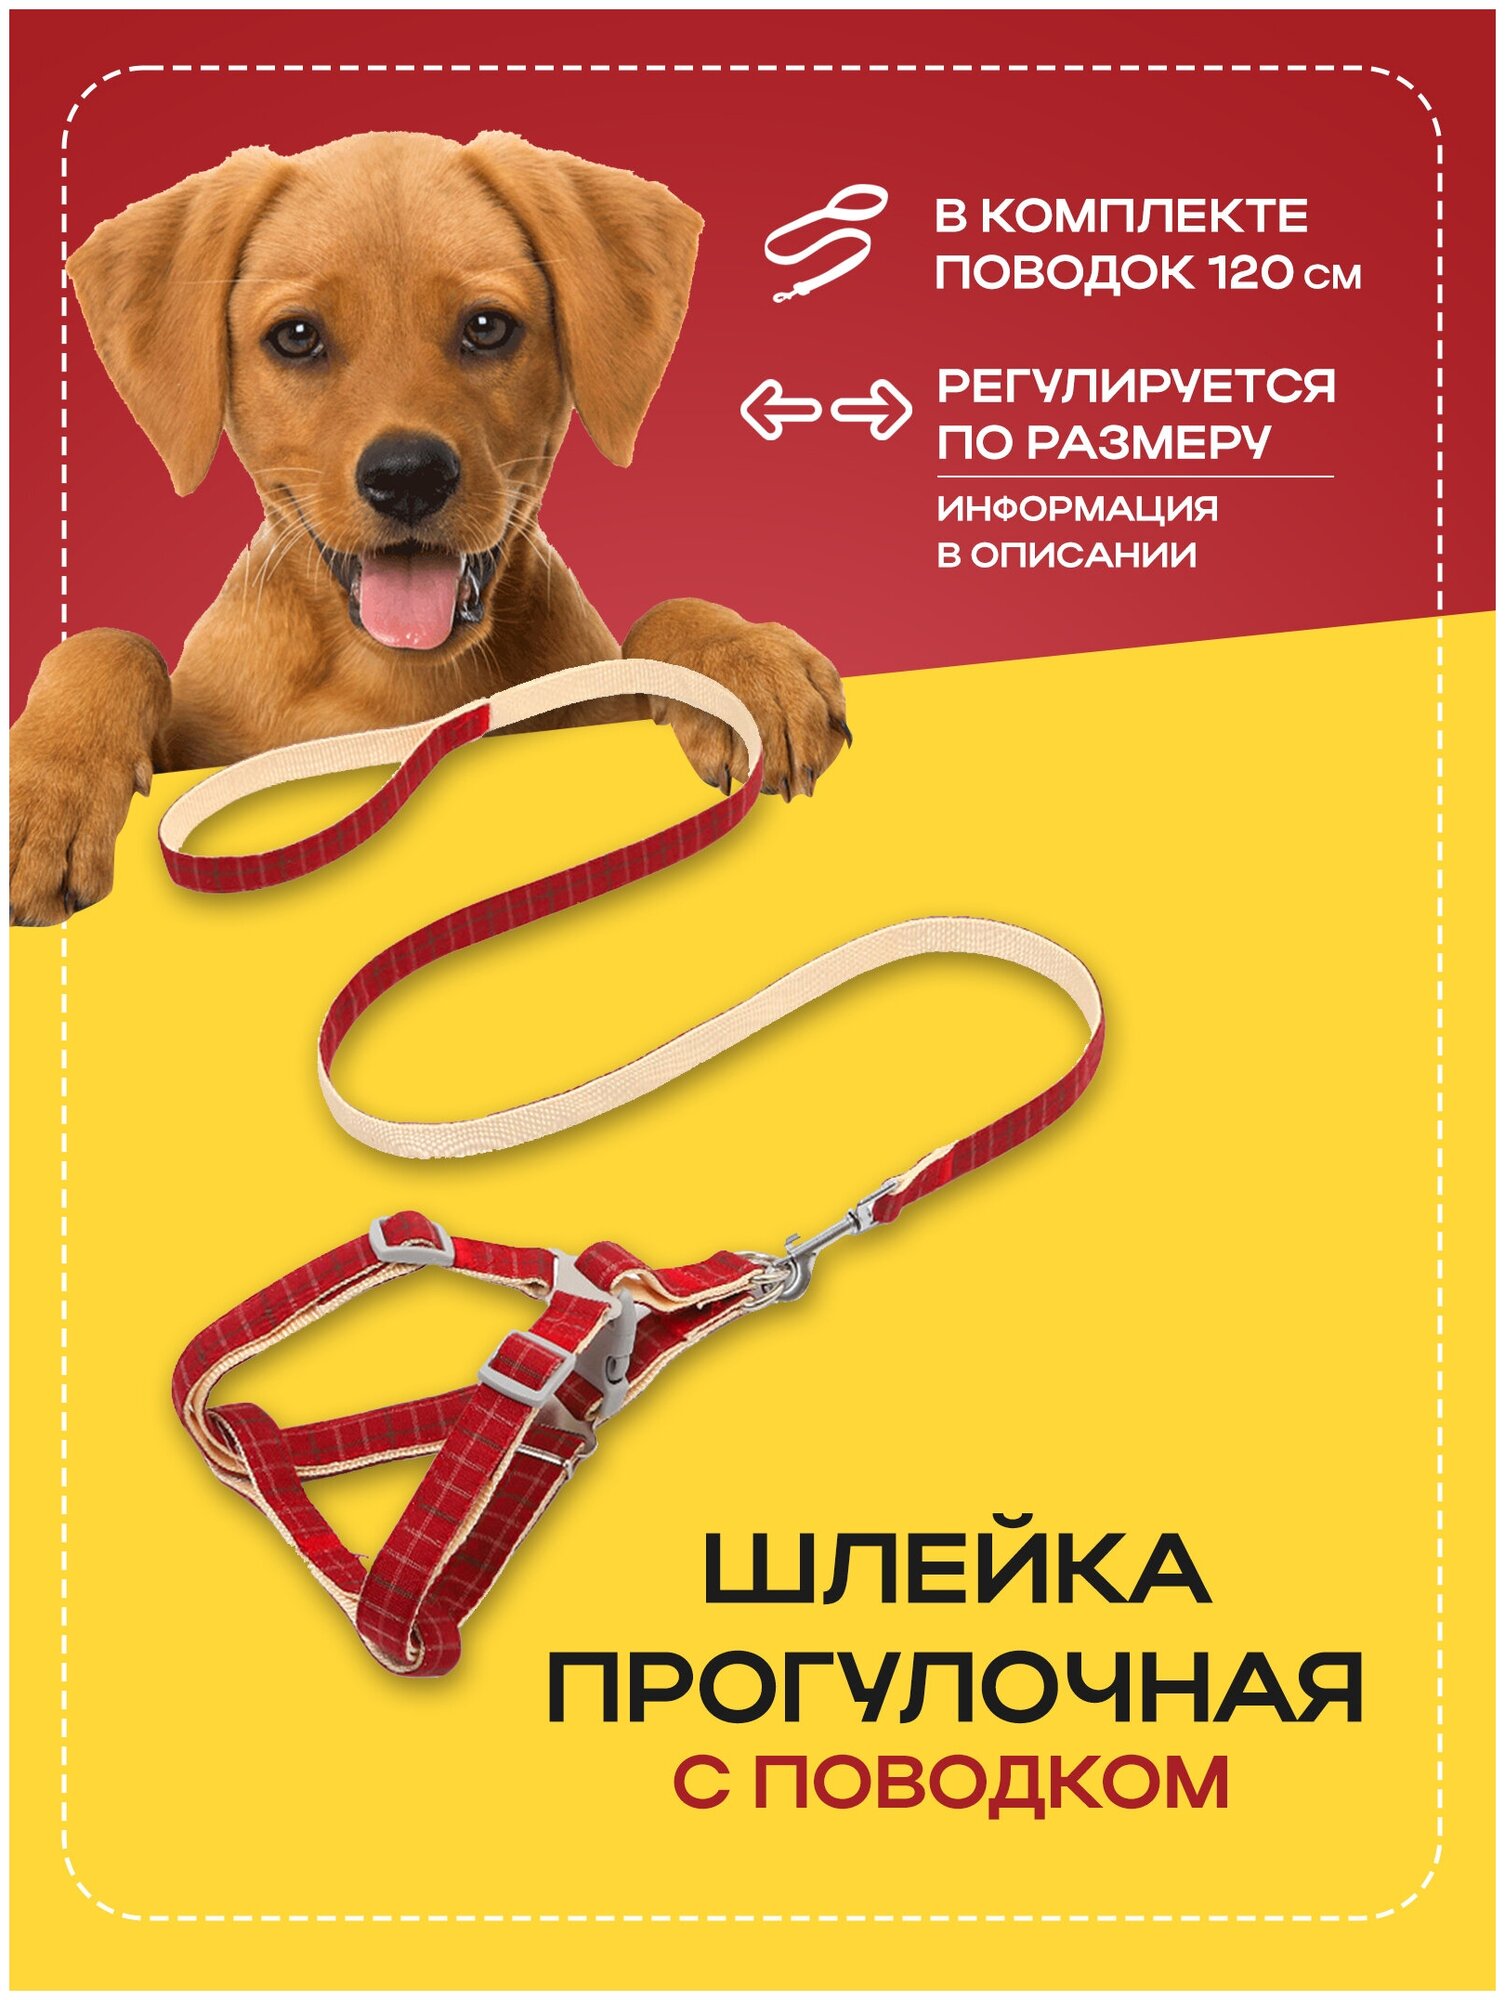 Шлейка прогулочная повседневная регулируемая для собак и кошек с проводком, амуниция для прогулки, красный, размер L